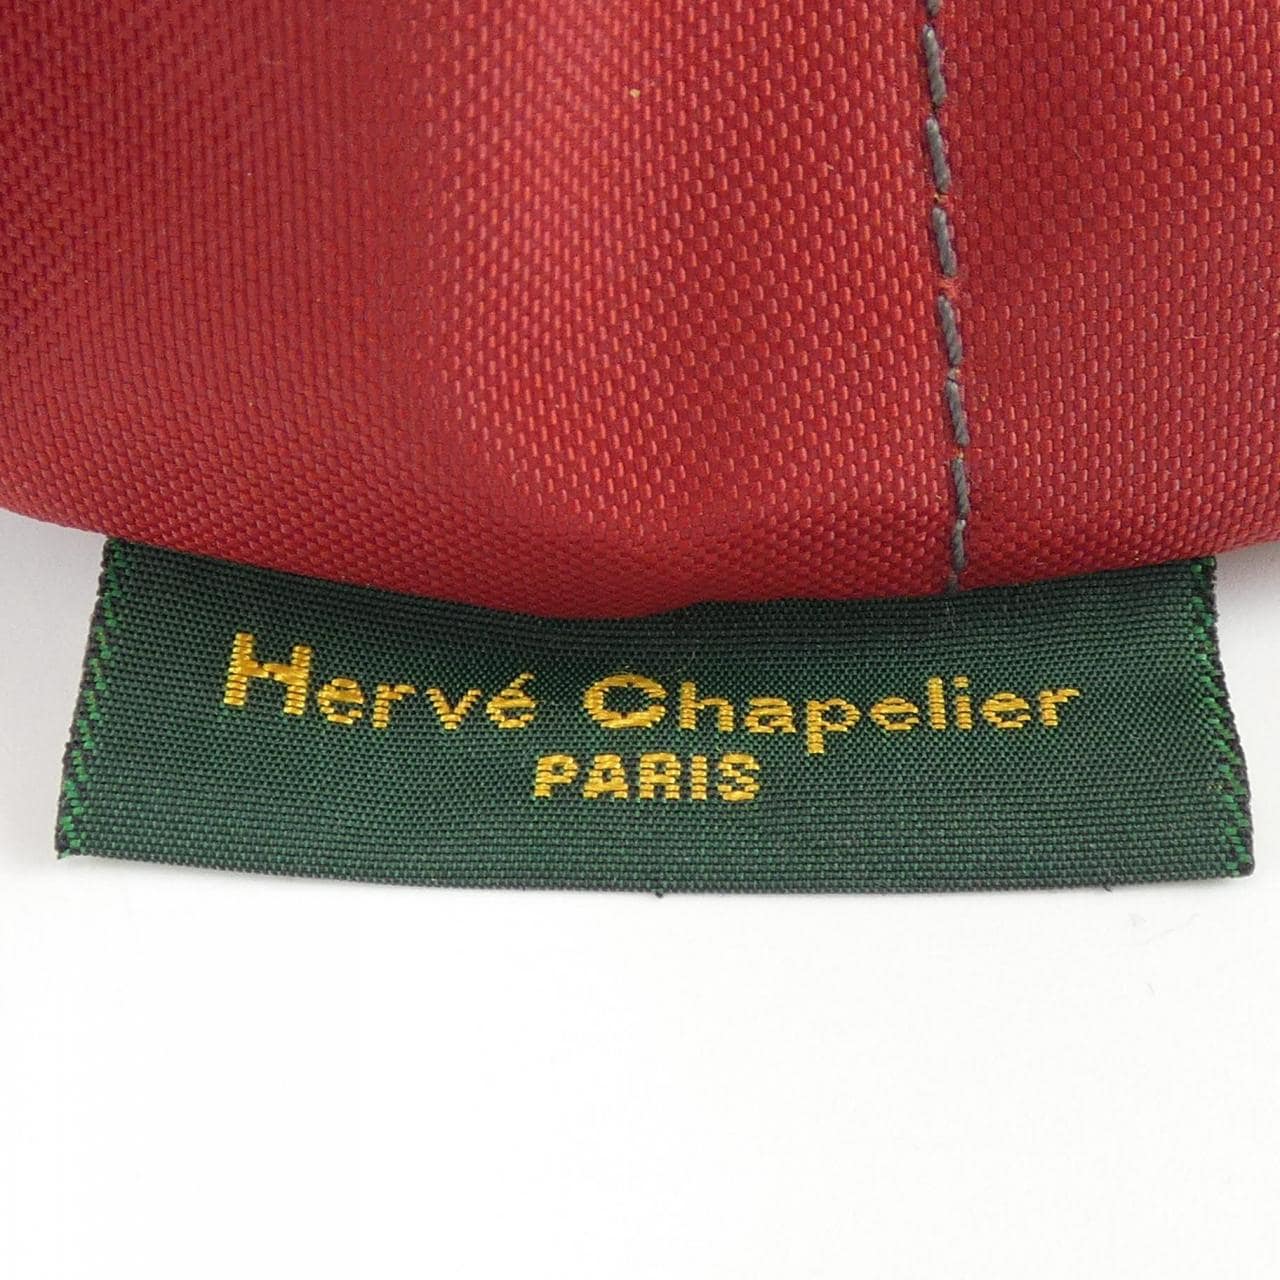 HERVE CHAPELIER BAG